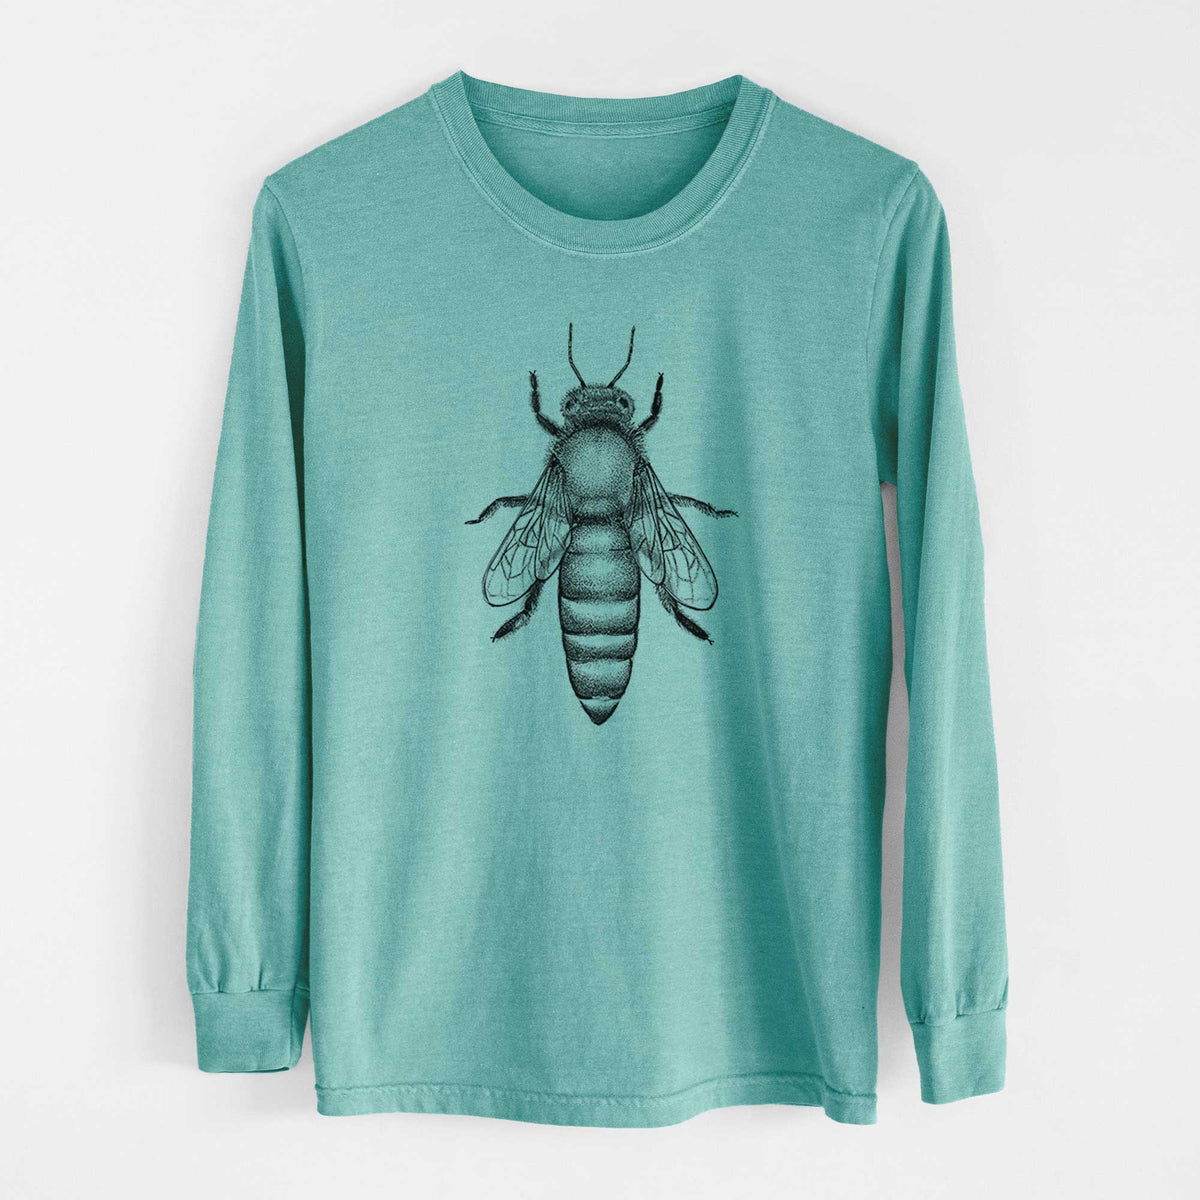 Queen Bee Apis Mellifera - Heavyweight 100% Cotton Long Sleeve